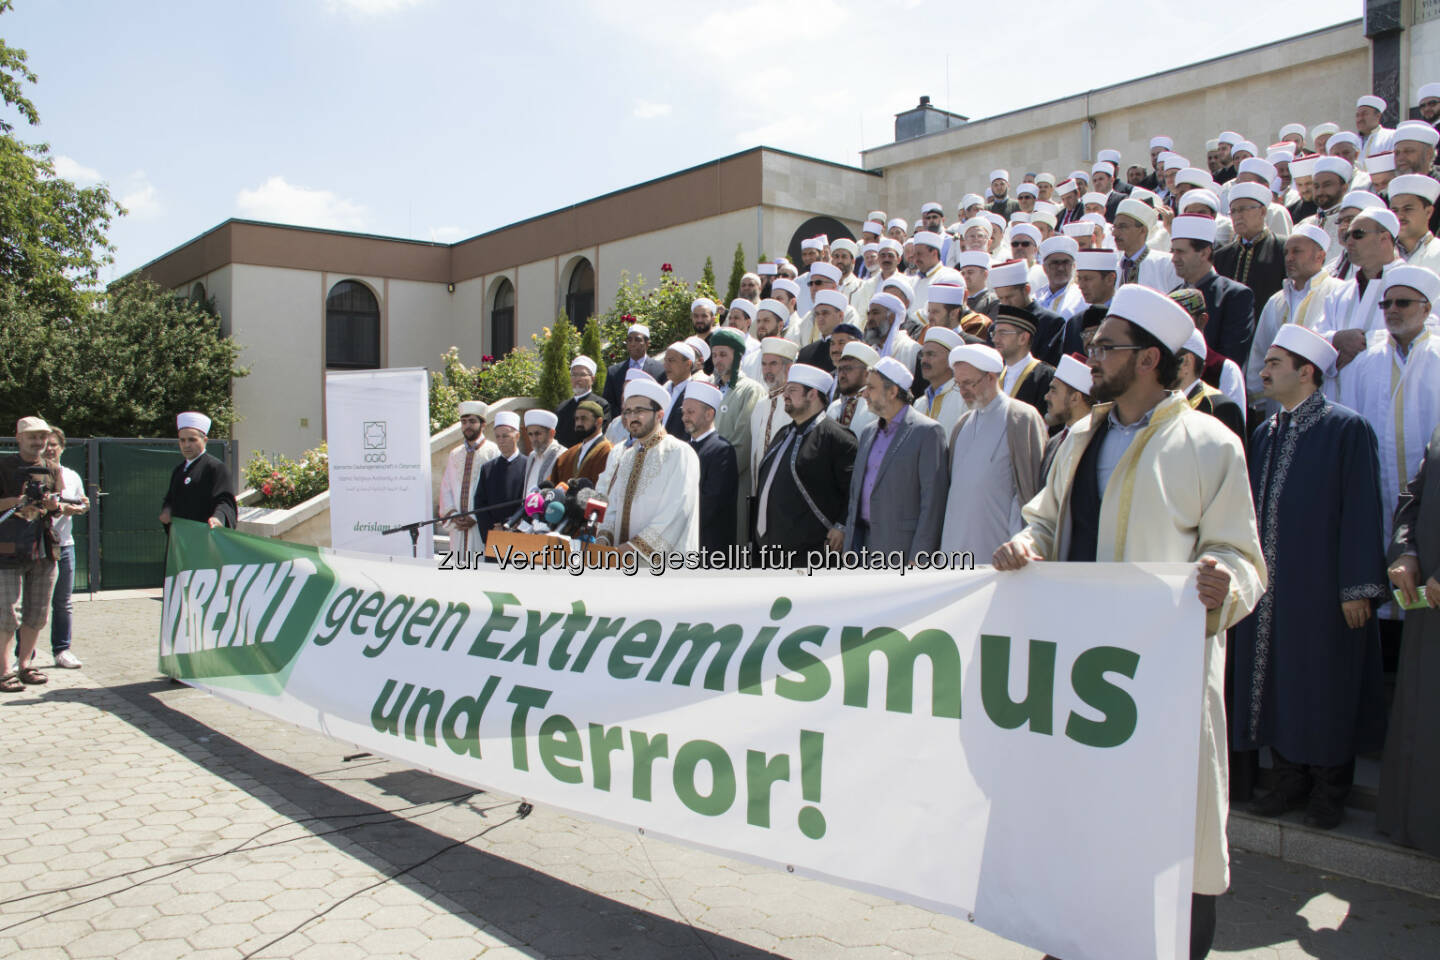 Imame der IGGÖ versammelten sich vor dem Islamischen Zentrum in Wien und setzten gemeinsam ein Zeichen gegen Extremismus und Terror - Islamische Glaubensgemeinschaft in Österreich (IGGÖ): Bis dato haben 312 Imame der Islamischen Glaubensgemeinschaft die Deklaration gegen Terror und Extremismus unterzeichnet (Fotograf: YILMAZ PECE / Fotocredit: Islamische Glaubensgemeinschaft in Österreich)